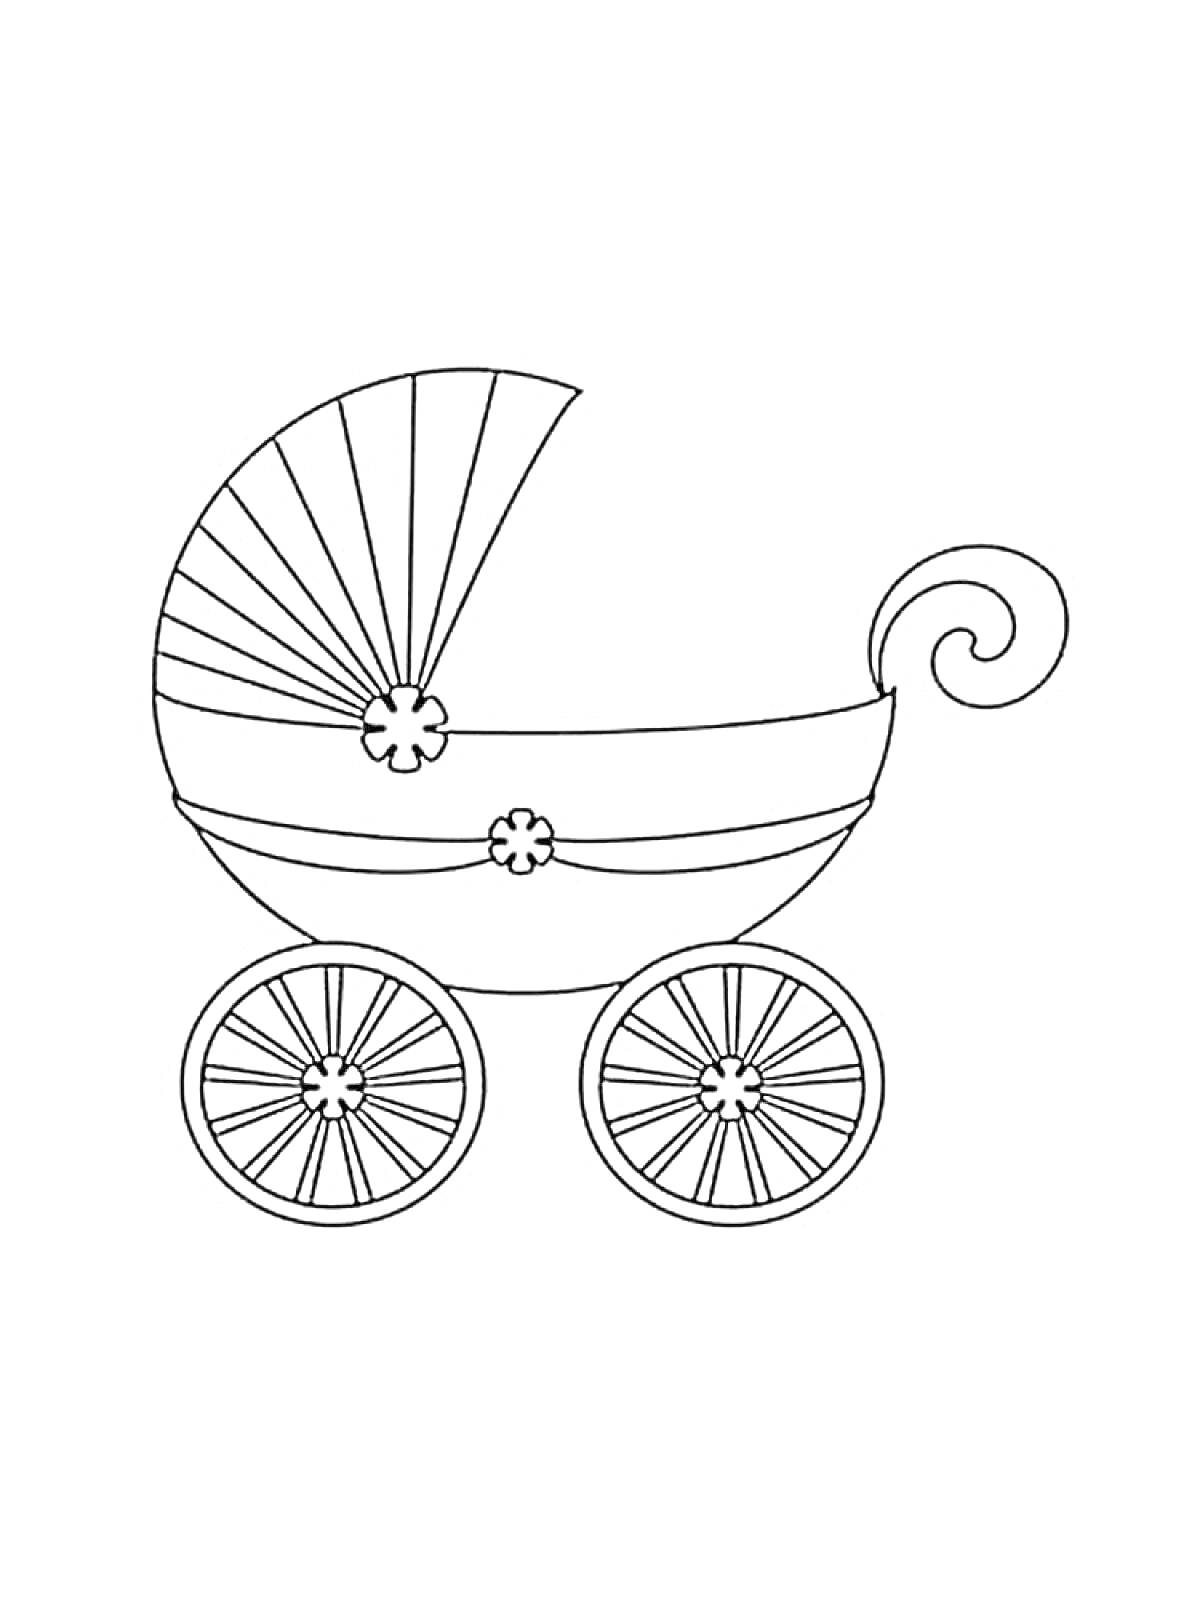 Раскраска Детская коляска с дугами, цветами на корпусе и четырьмя колесами